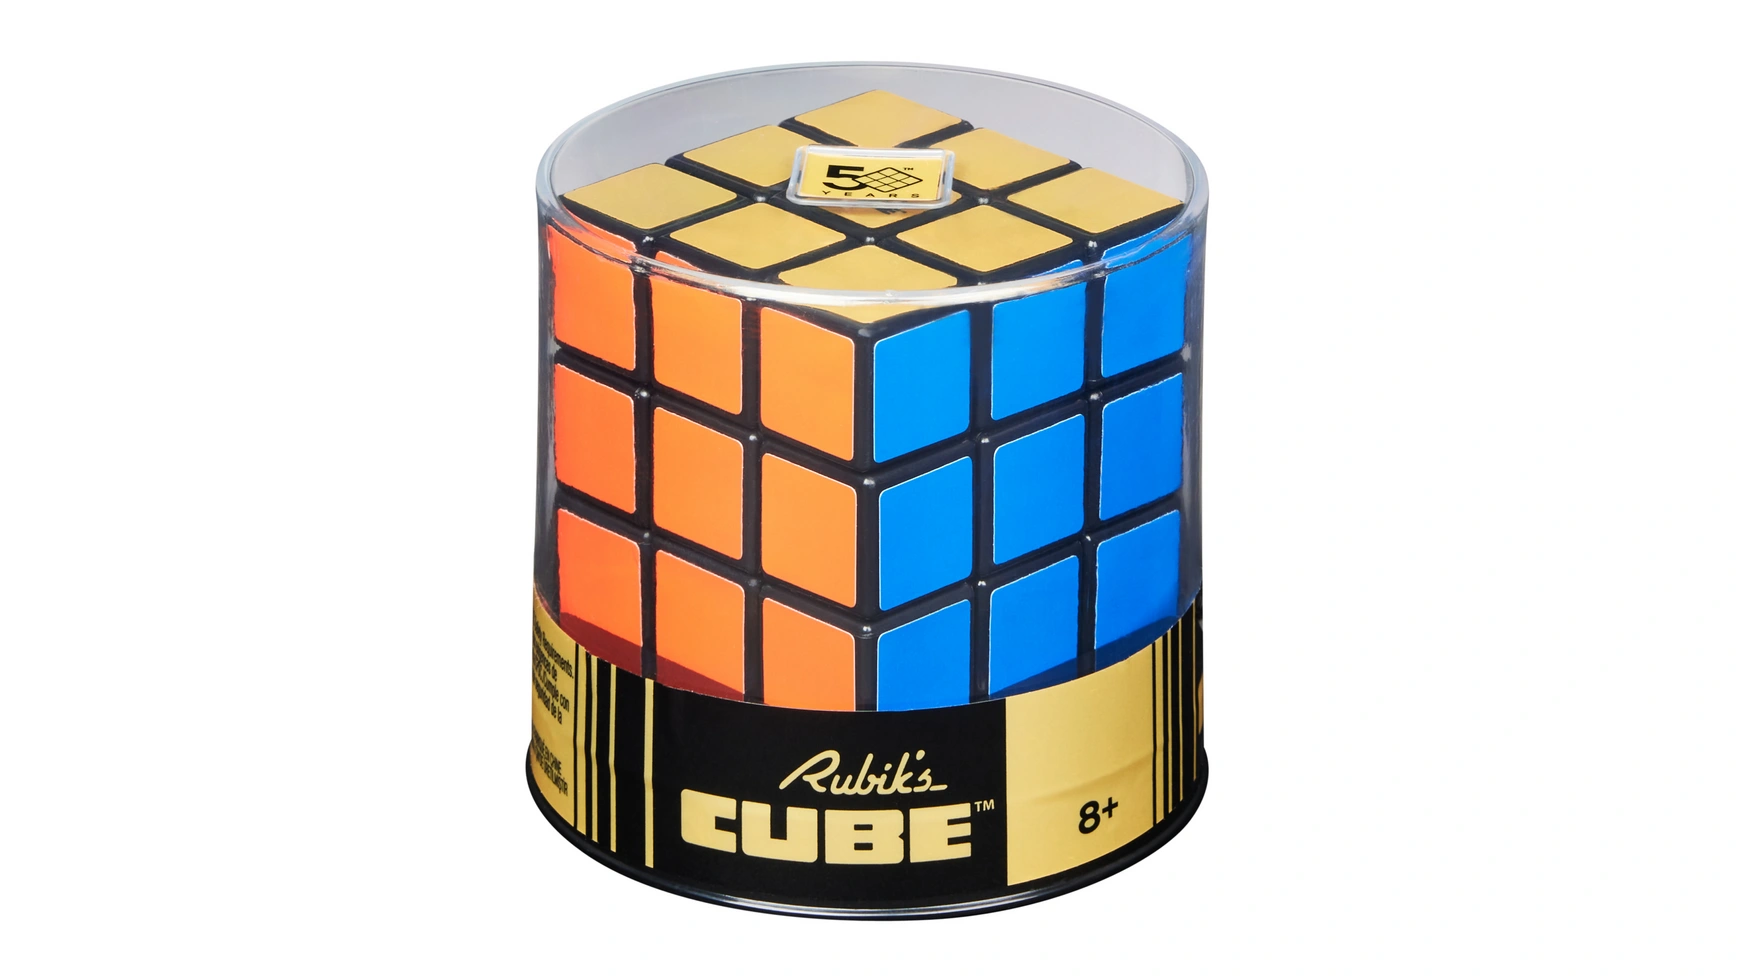 Ретро-кубик Рубика 3x3 Кубик Рубика кубик 3x3, внешний вид которого напоминает оригинал 50-летней давности Spin Master кубик рубика qiyi mofangge 3x3 thunderclap v3 magnetic color